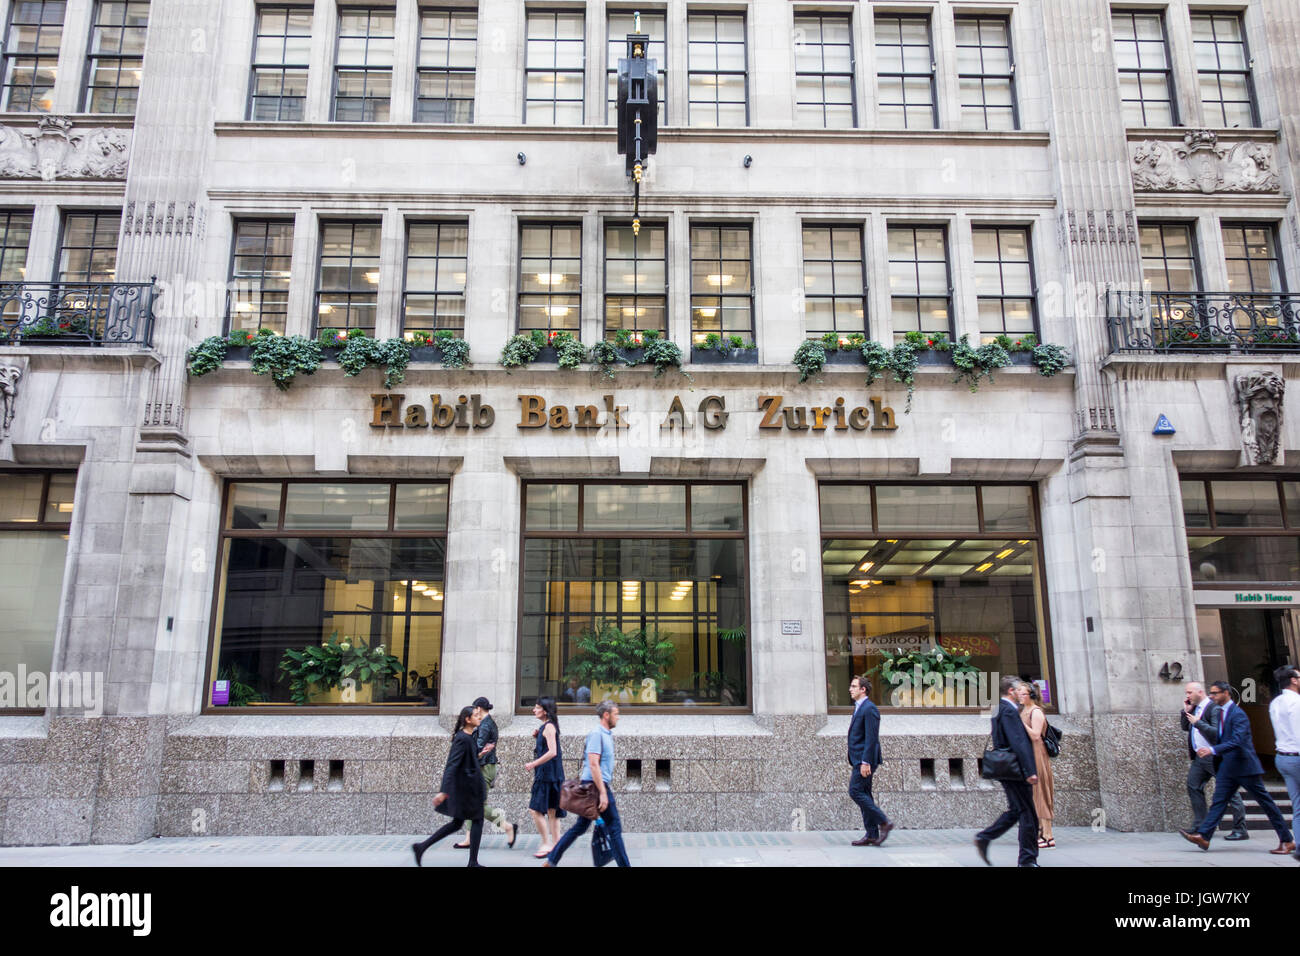 Habib Bank AG Zürich Gebäude auf Moorgate, City of London, Großbritannien Stockfoto